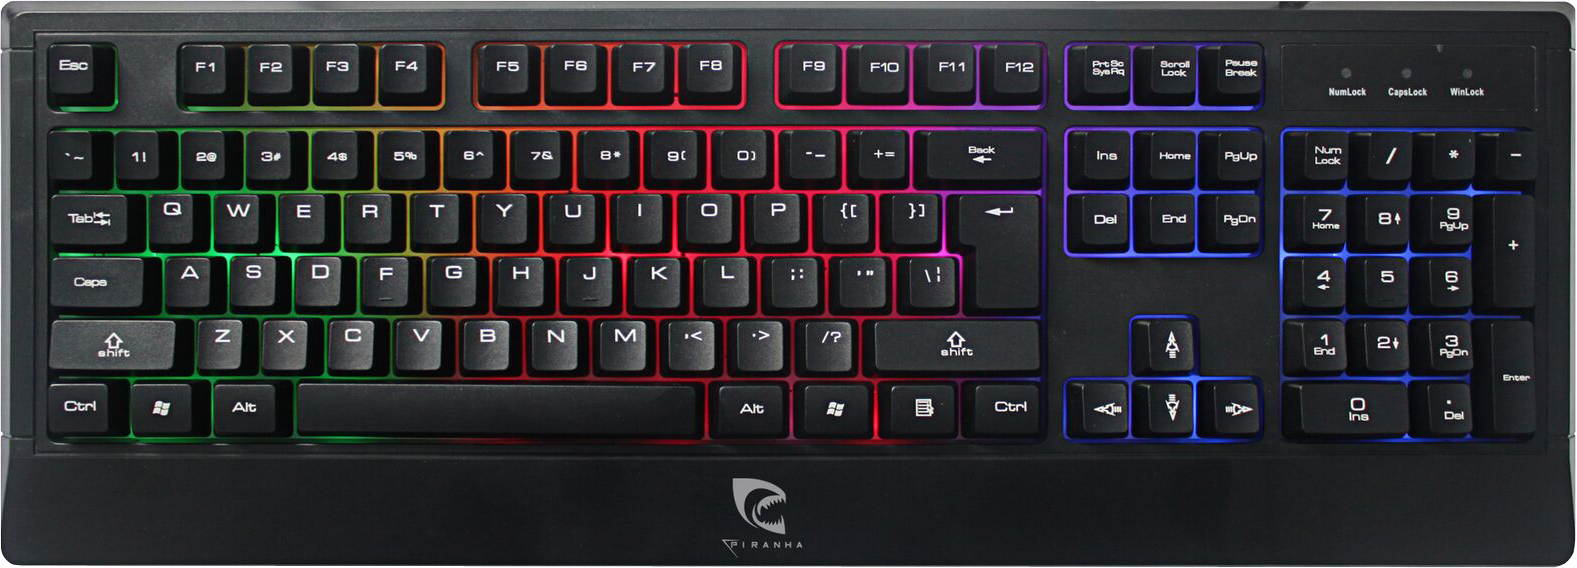 Piranha Gaming Keyboard K20 Gaming tastatur Piranha